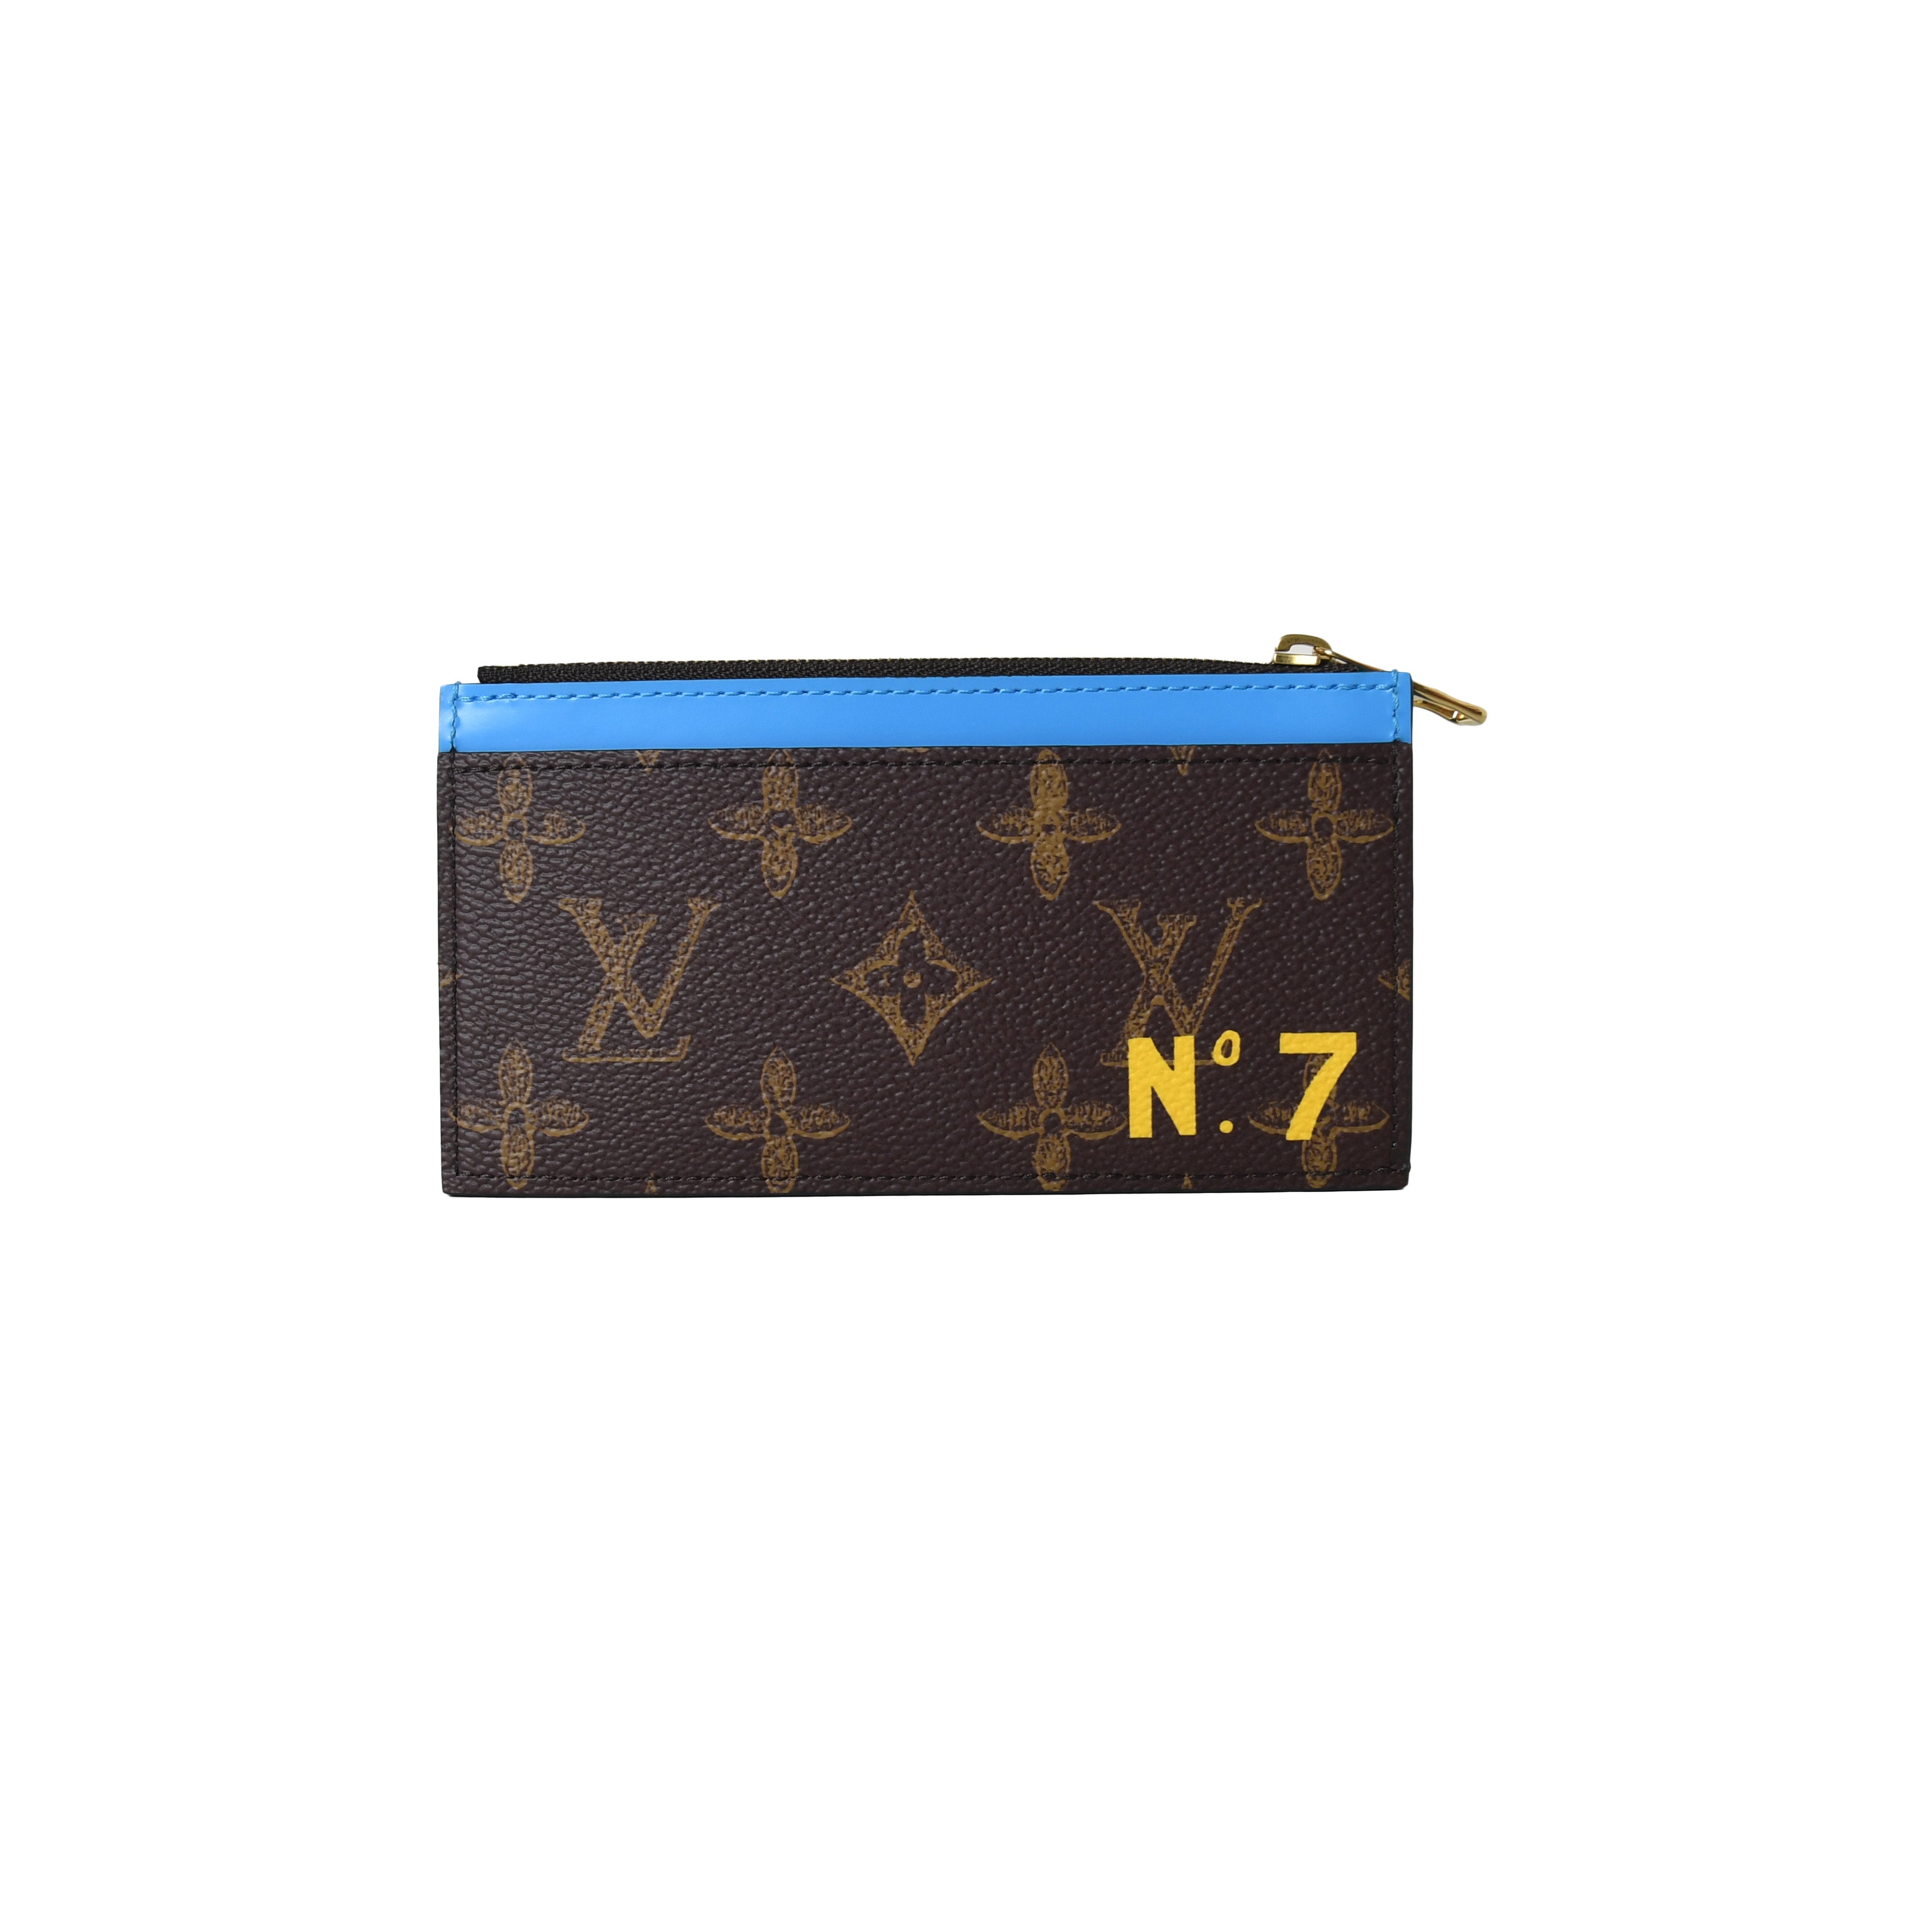 LOUIS VUITTON Coin card holder No.7 Monogram Blue M81256 LV W/Box